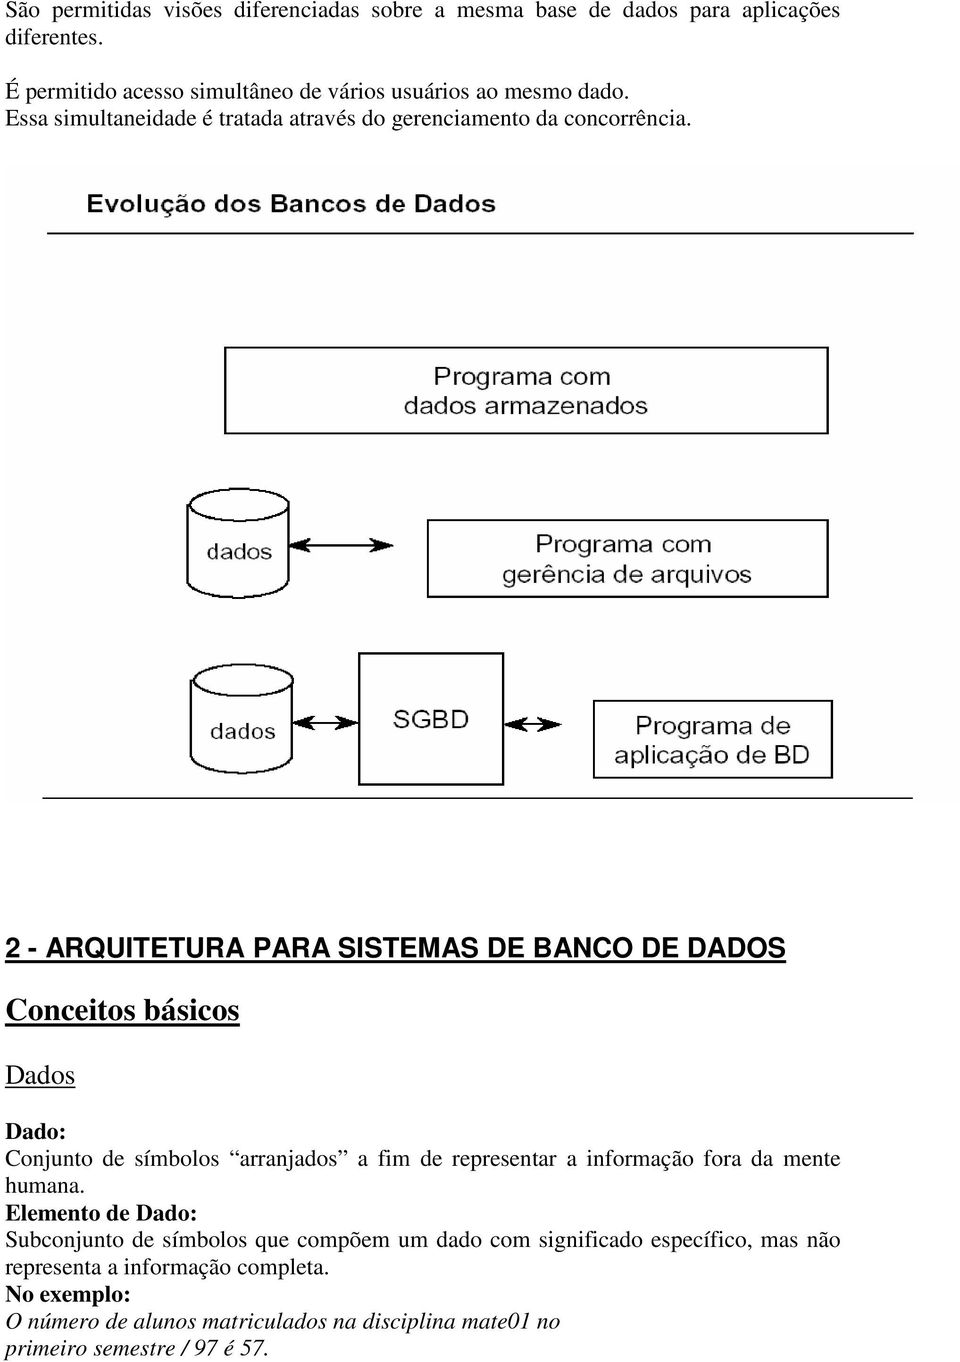 2 - ARQUITETURA PARA SISTEMAS DE BANCO DE DADOS Conceitos básicos Dados Dado: Conjunto de símbolos arranjados a fim de representar a informação fora da